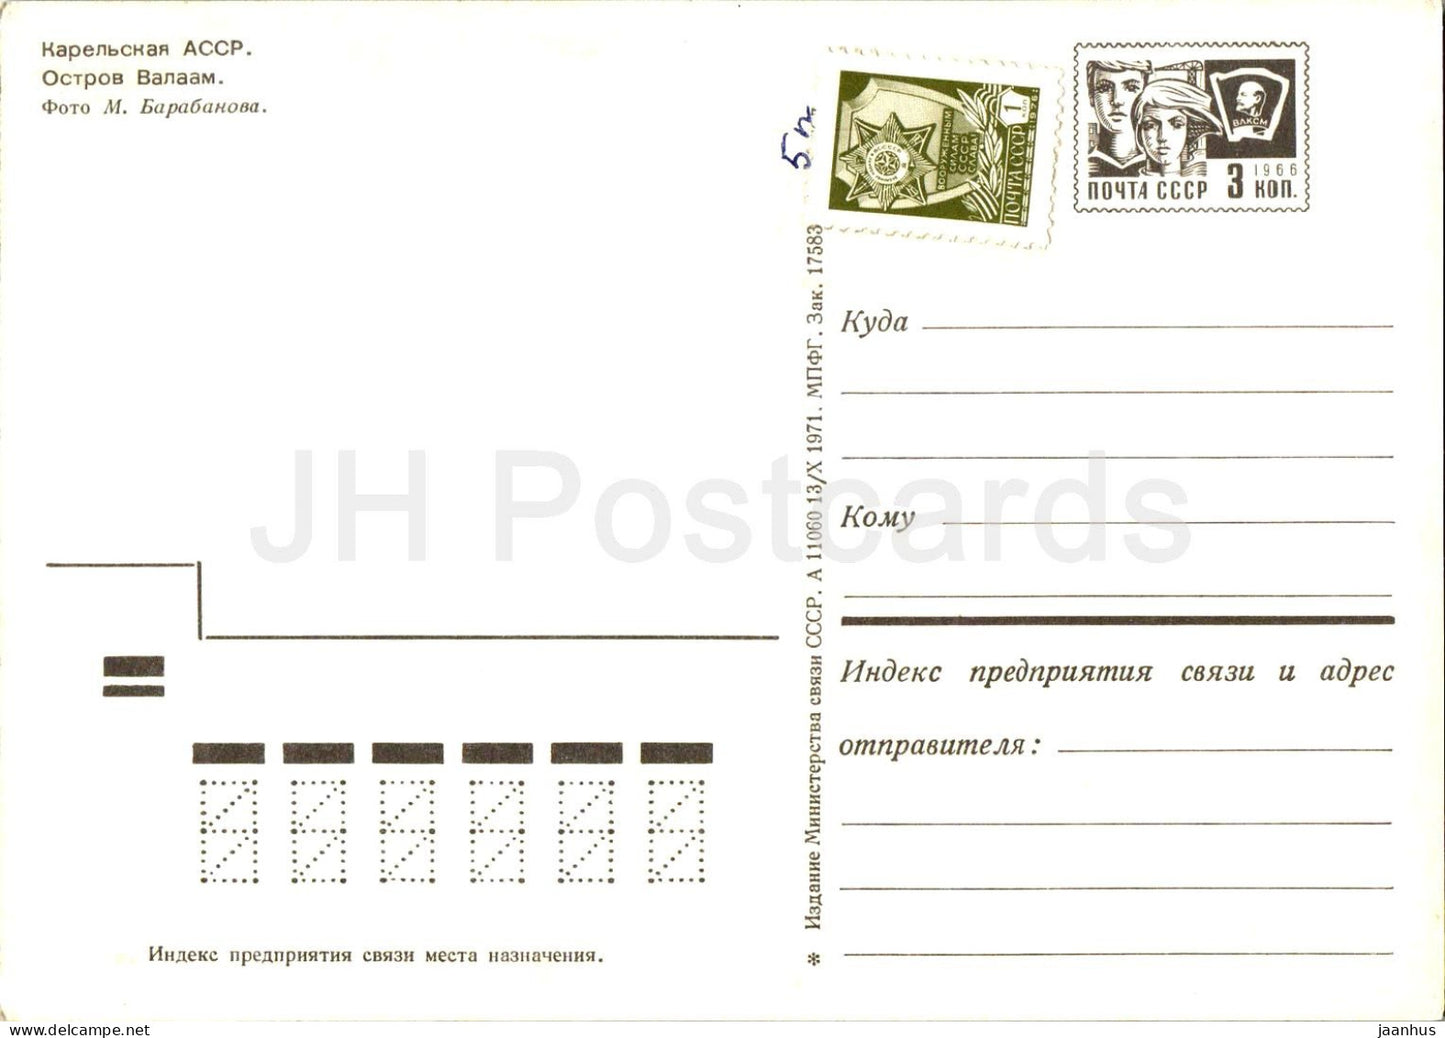 Valaam island - Karelia - Karjala - postal stationery - 1971 - Russia USSR - unused